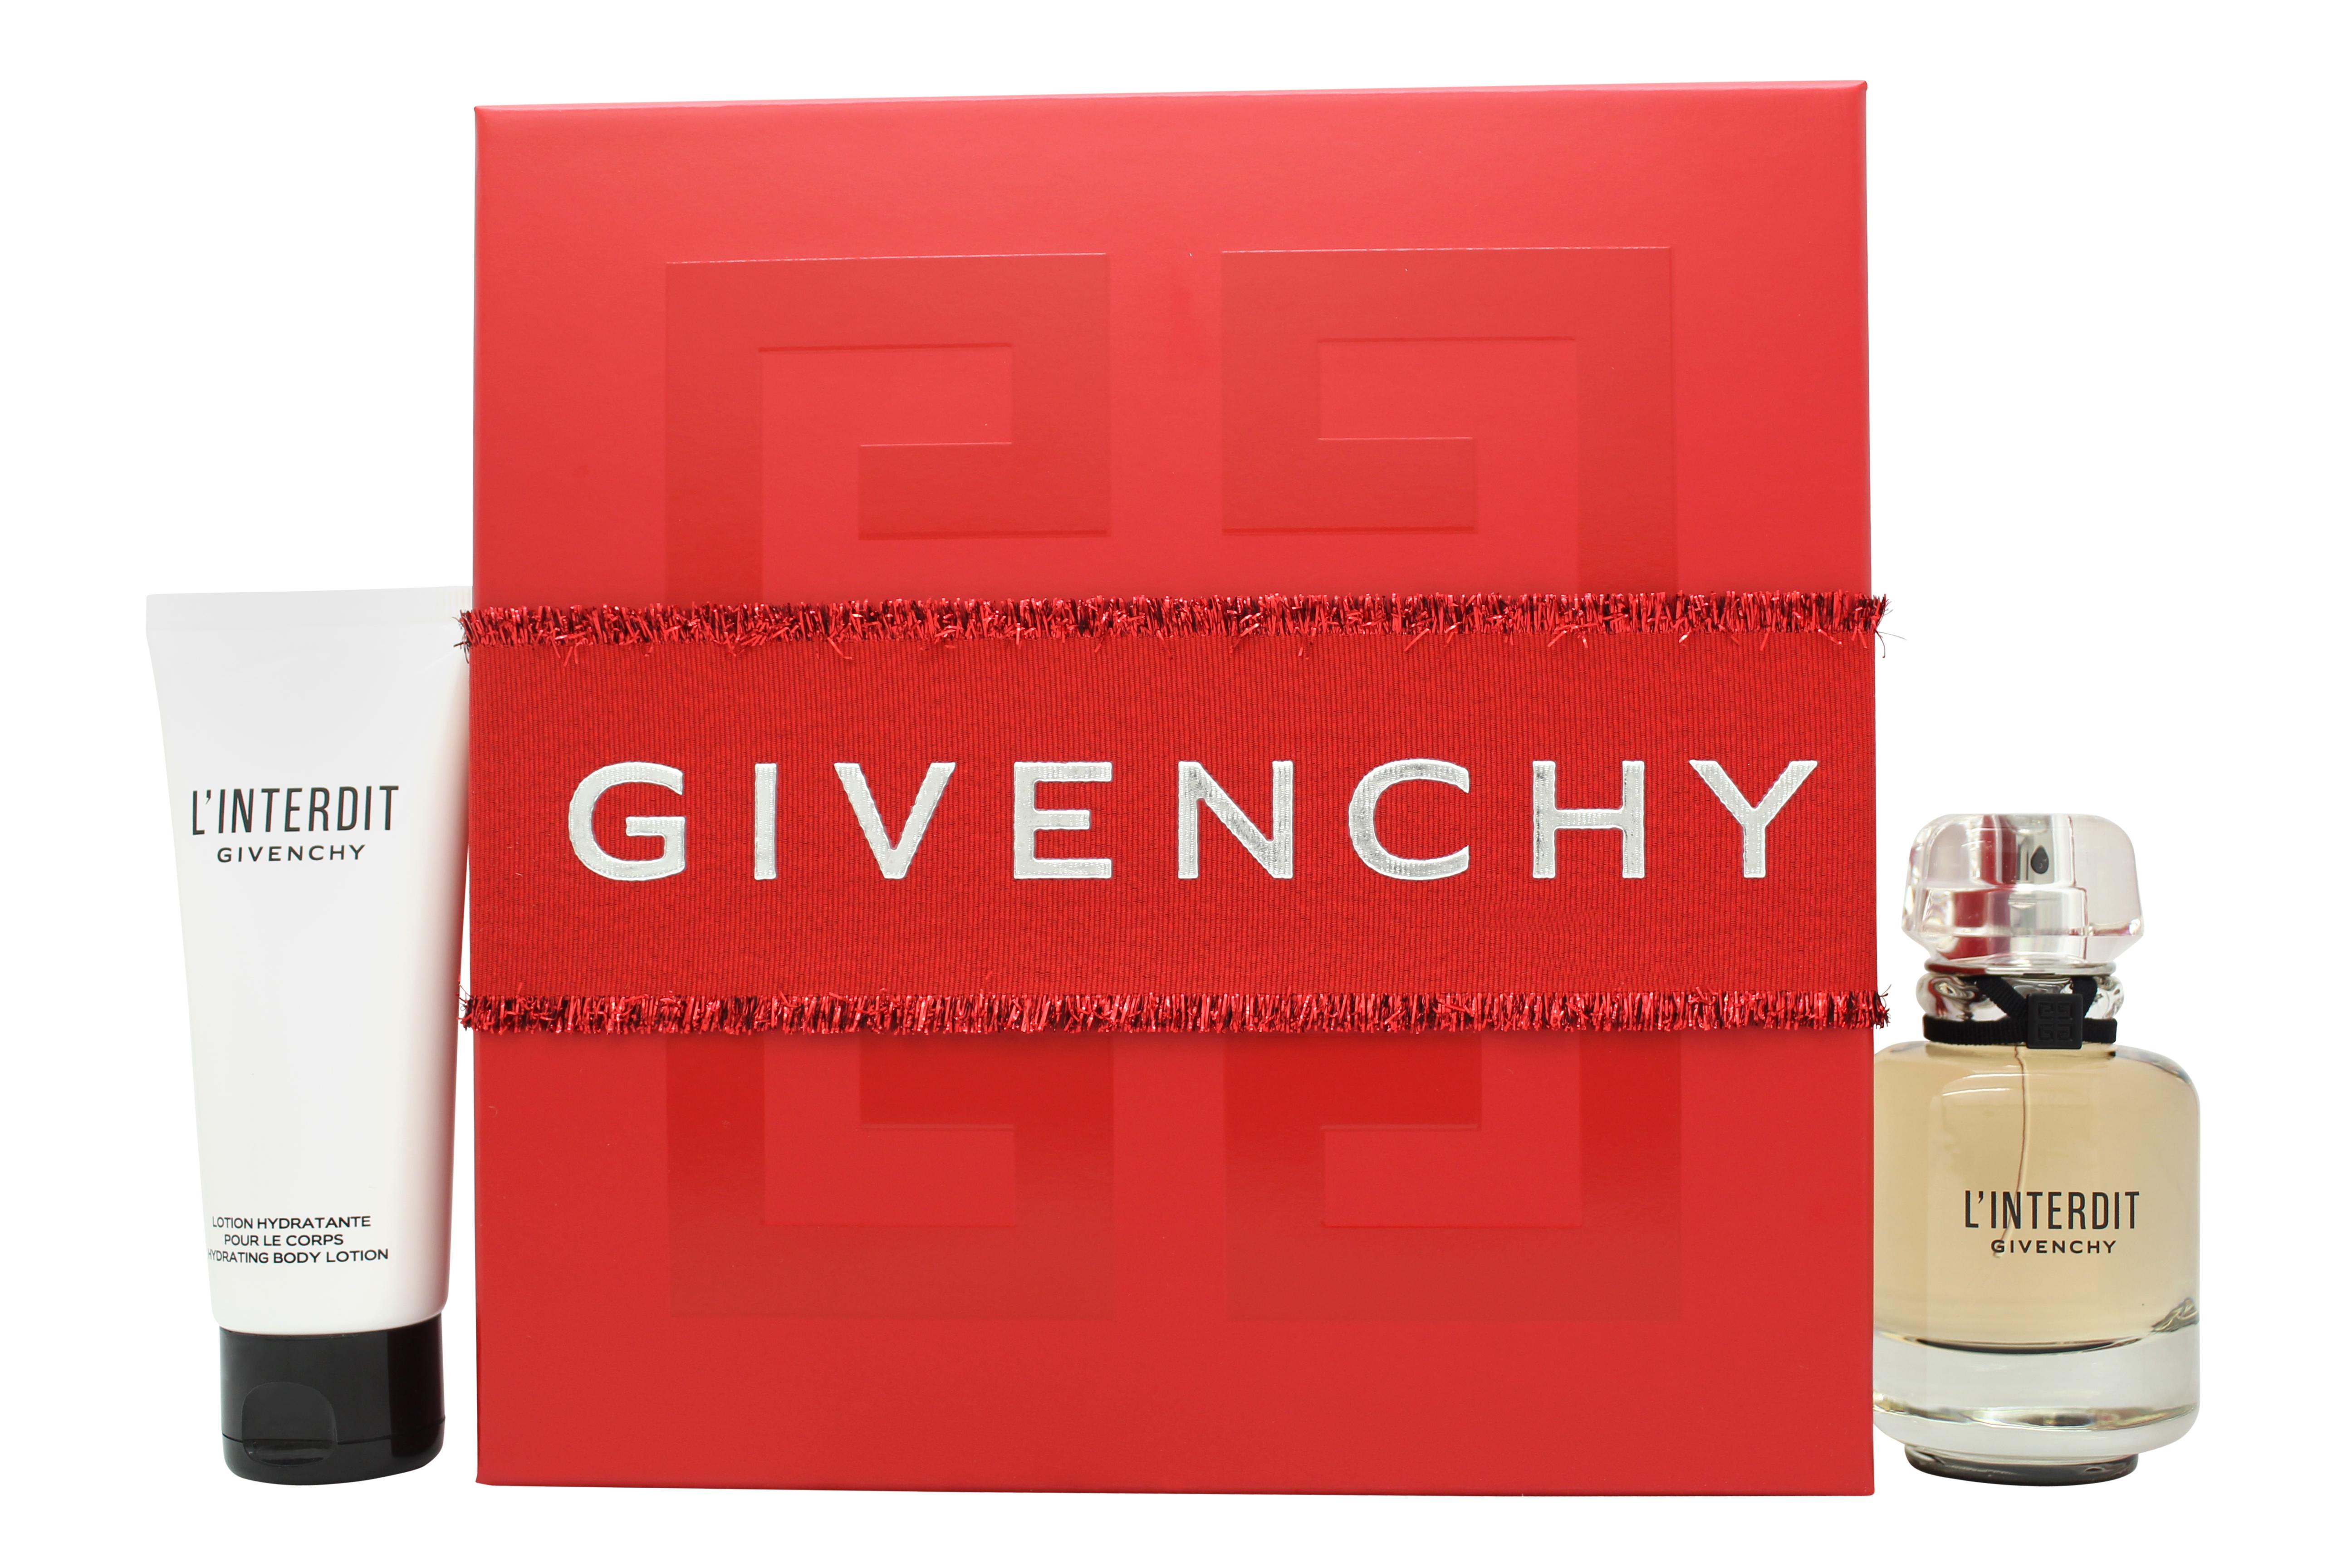 Givenchy L'Interdit Gift Set 50ml EDP + 75ml Body Lotion (This gift set contains:  1 x 50ml EDP 1 x 75ml Body Lotion)